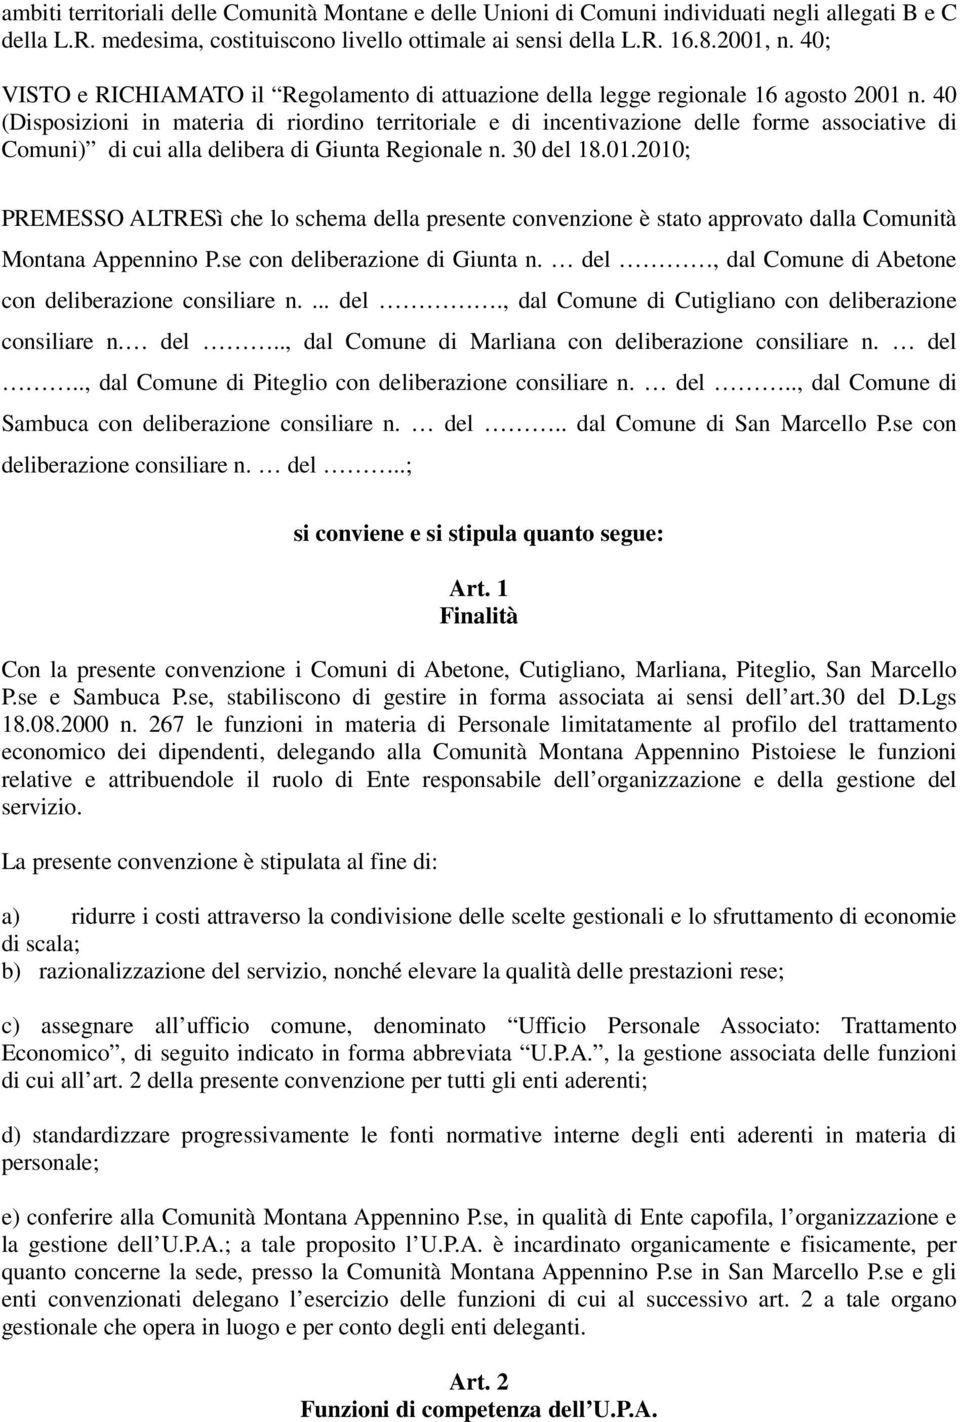 40 (Disposizioni in materia di riordino territoriale e di incentivazione delle forme associative di Comuni) di cui alla delibera di Giunta Regionale n. 30 del 18.01.